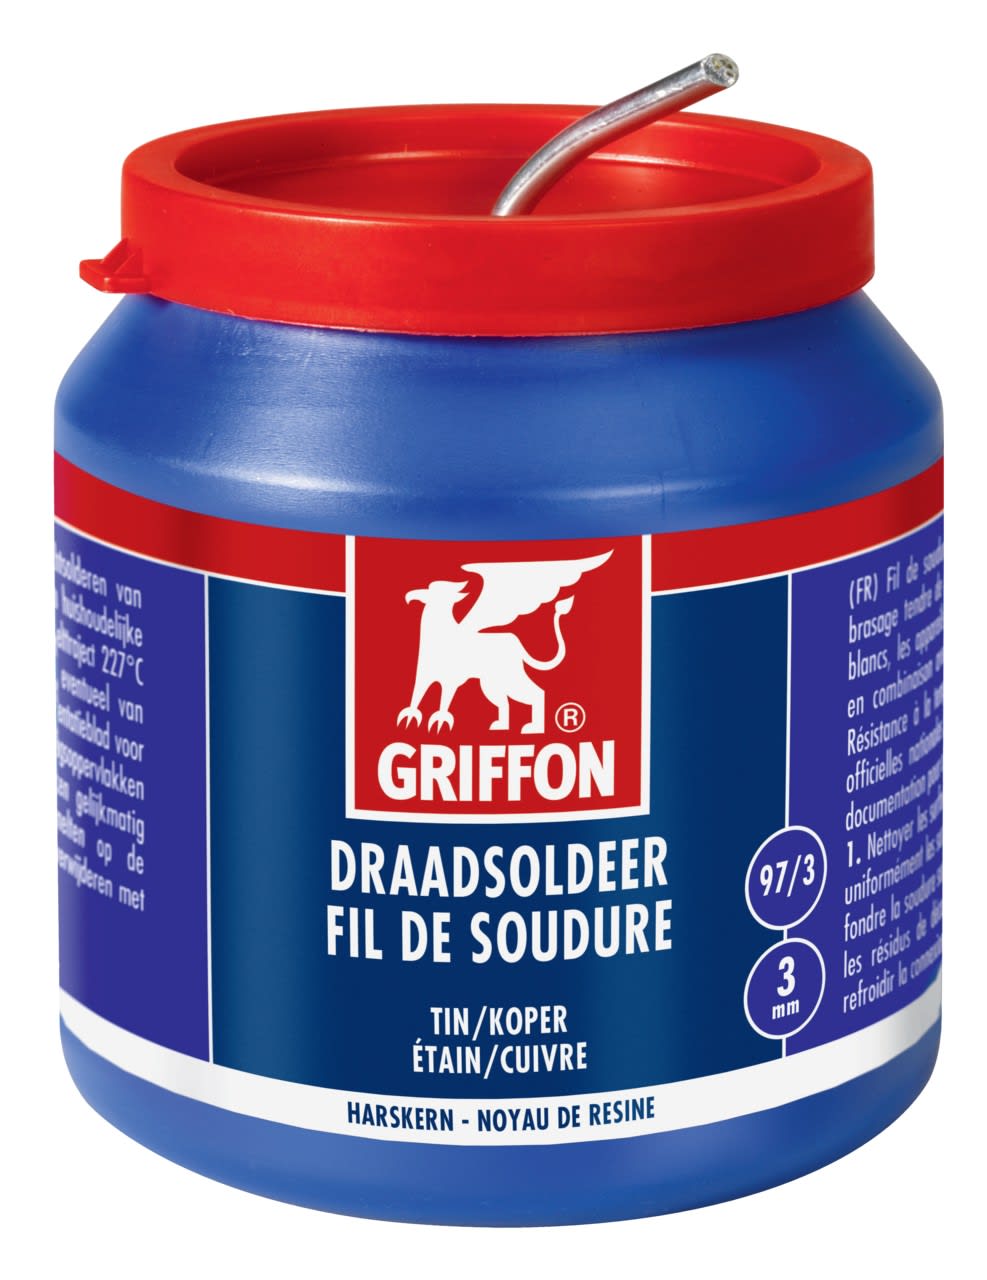 Griffon - Fil de soudure etain-cuivre 97-3 noyau de resine - Dia 1.5 mm - Pot 500 G